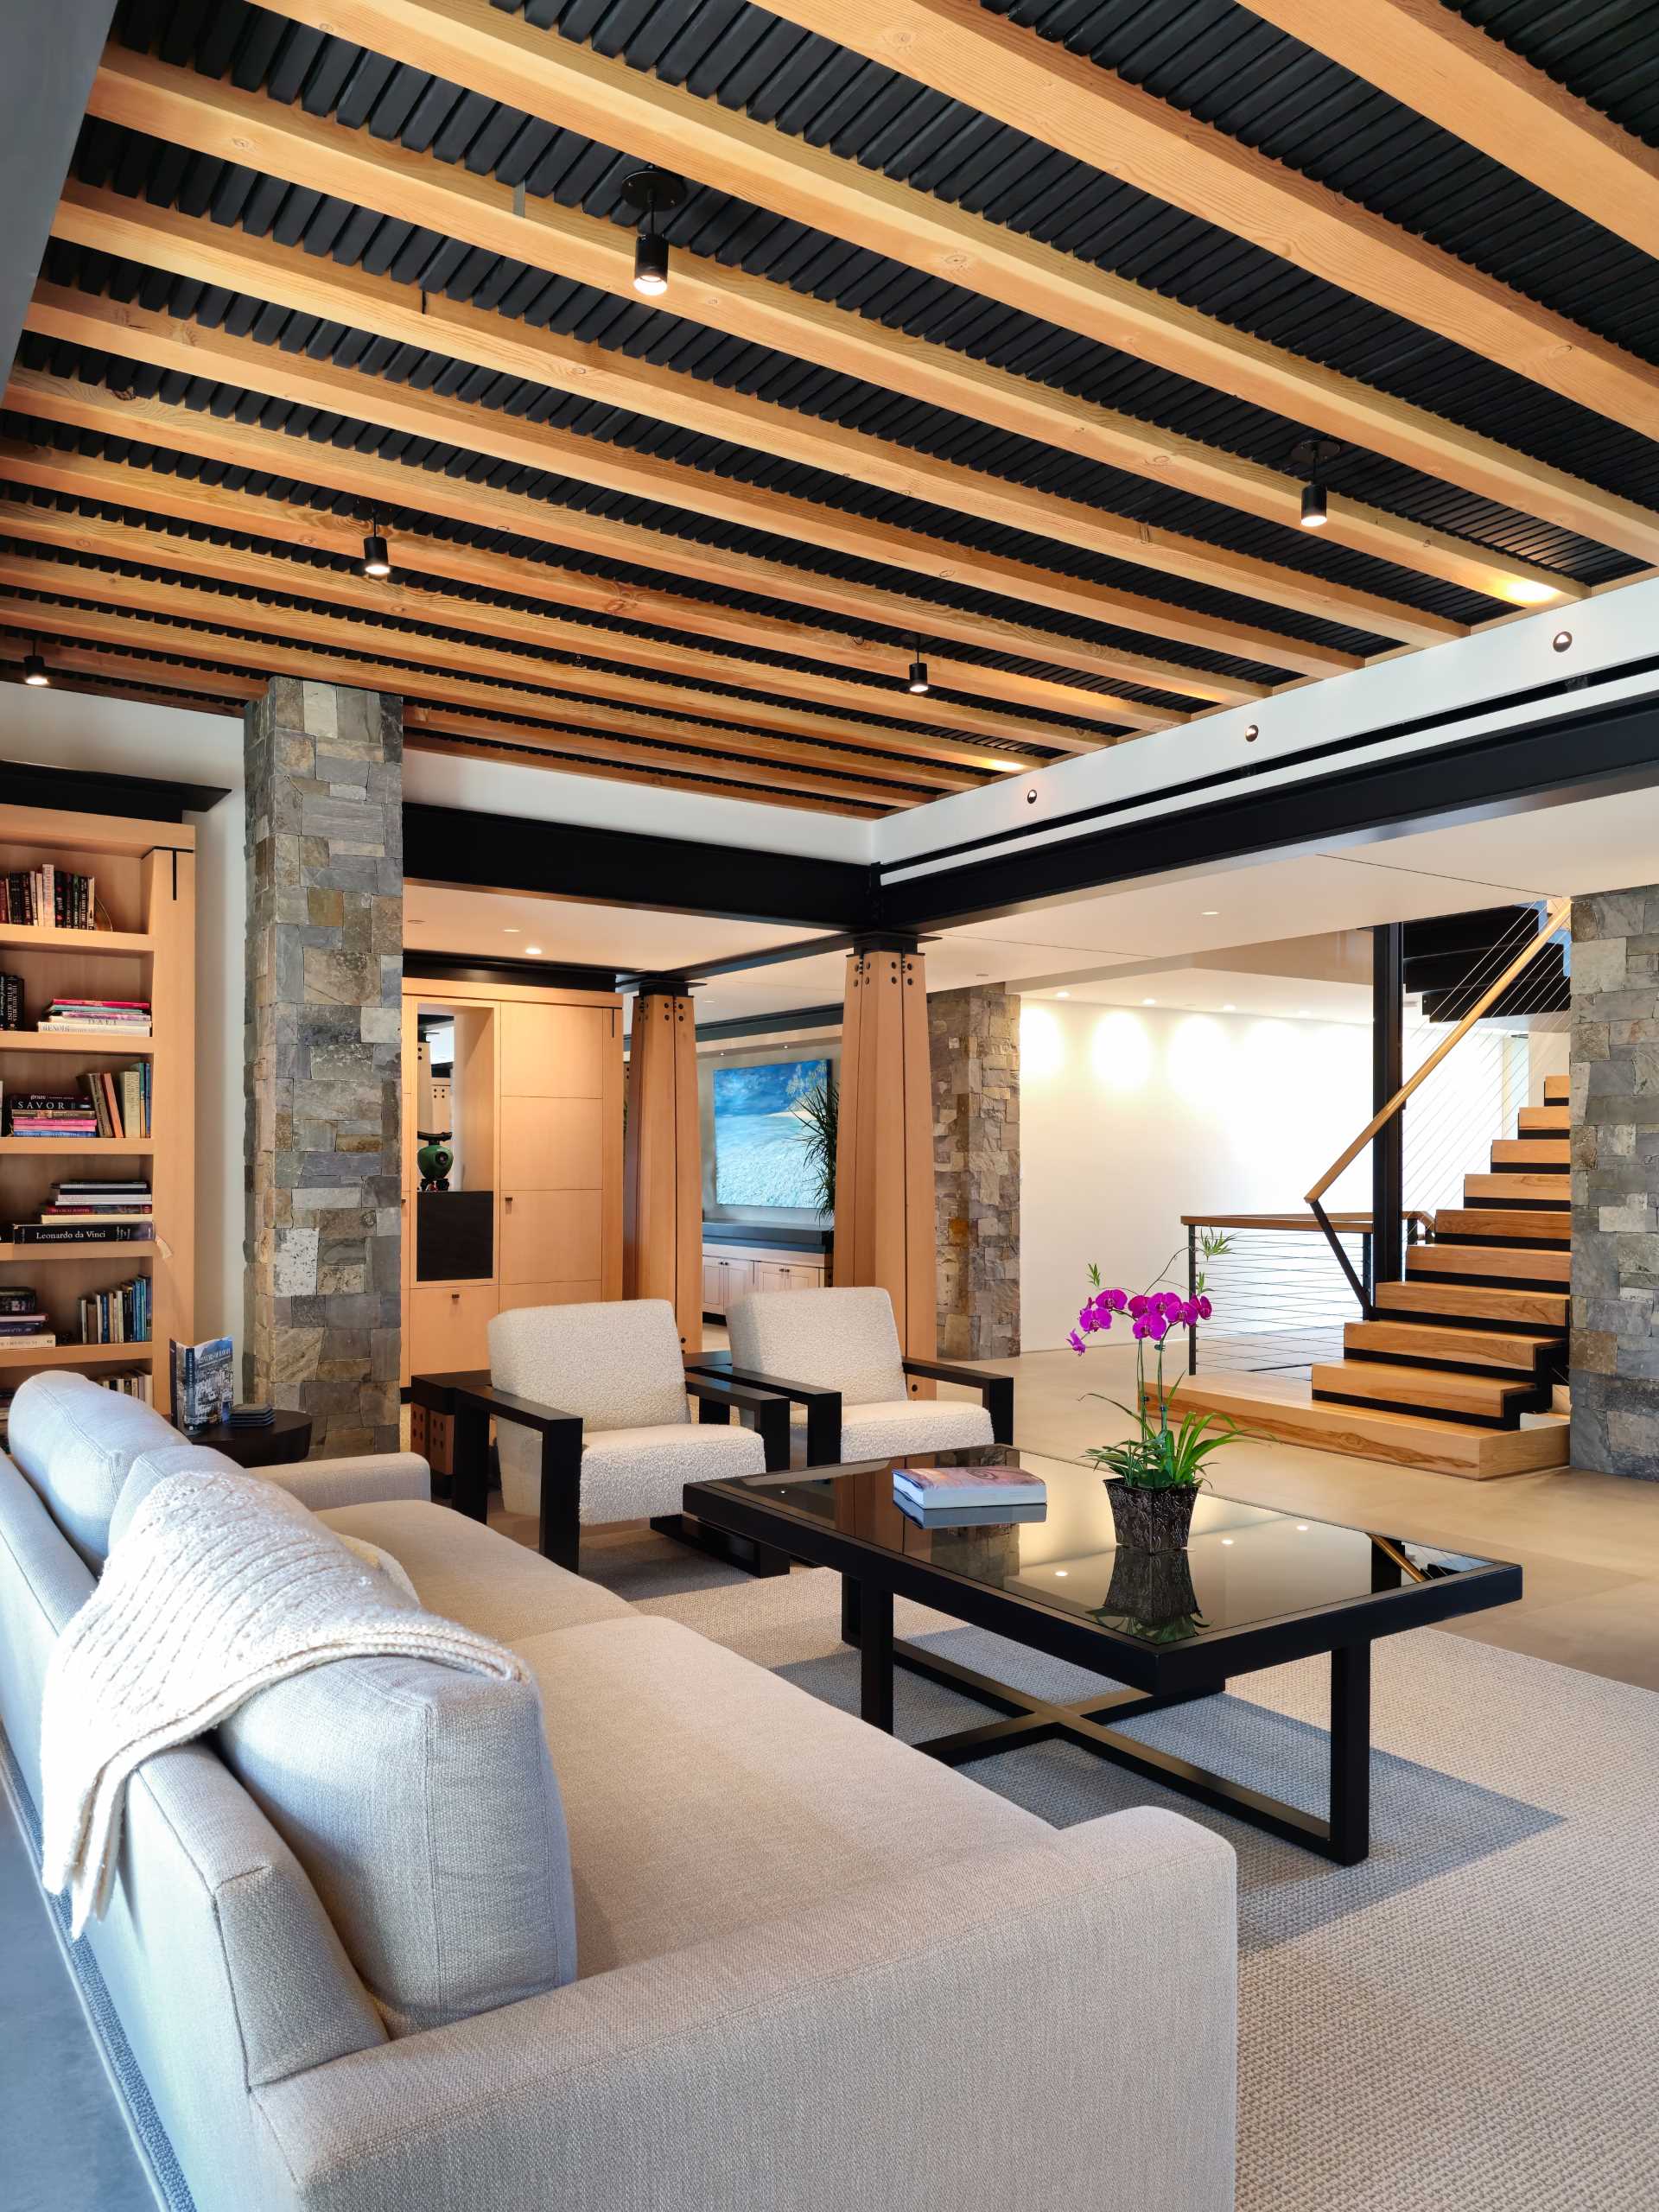 În interiorul acestei locuințe, ca și în zona de relaxare, elementele structurale sunt ușor de văzut, cu suporturi din lemn expuse contrastând cu grinzile de oțel negru.